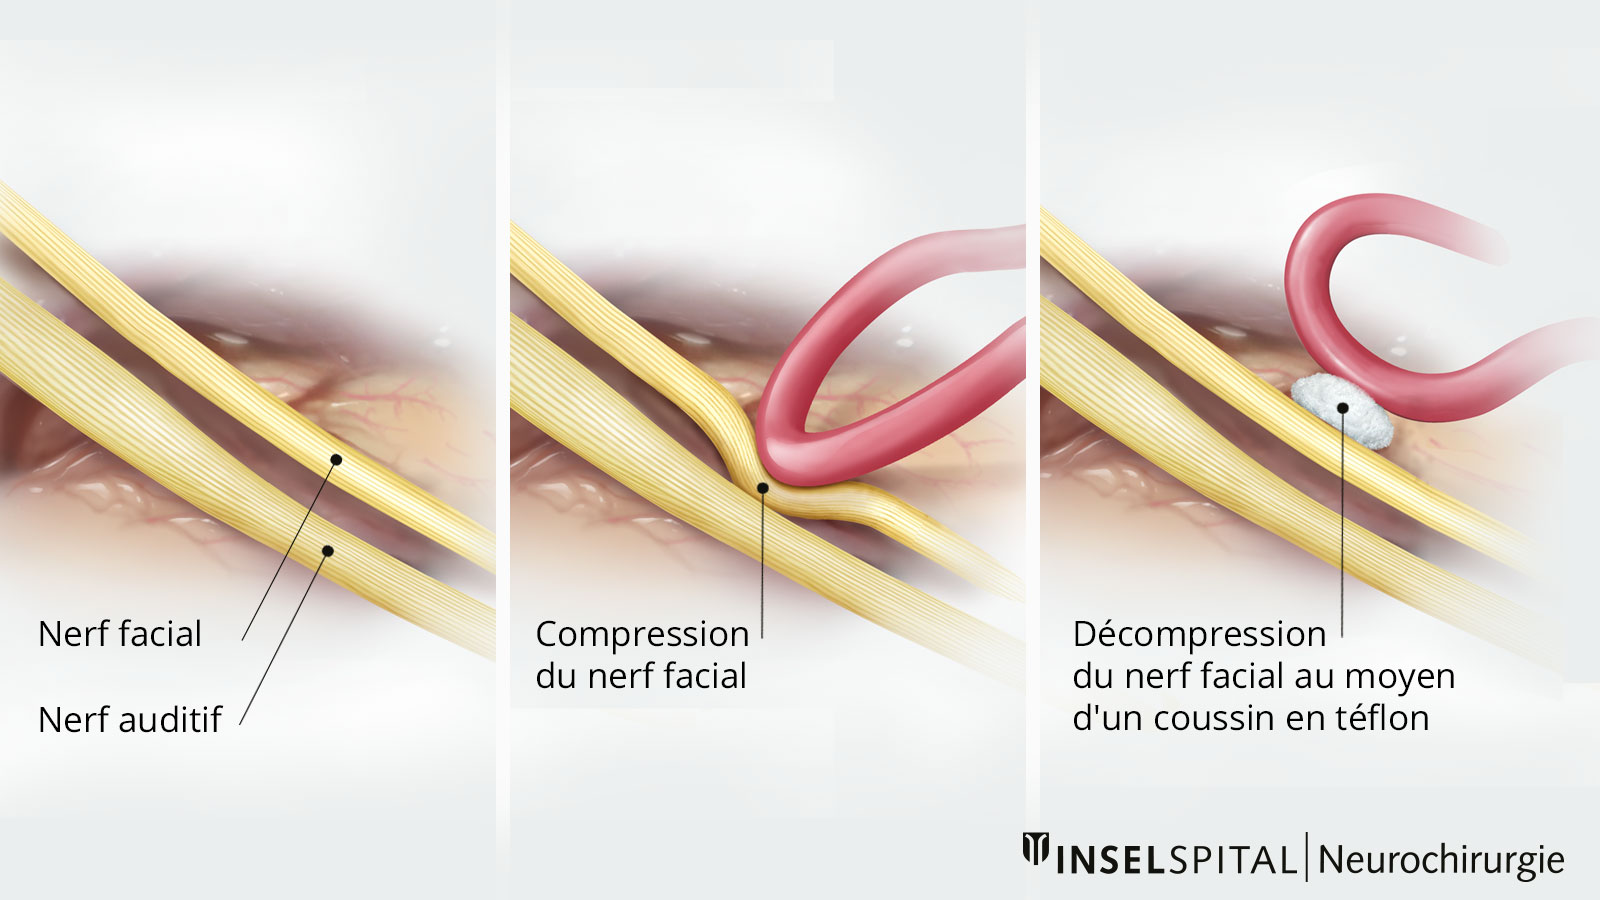 Dessin en trois parties pour la décompression du nerf facial. Un coussin en téflon est inséré entre le vaisseau sanguin et le nerf.